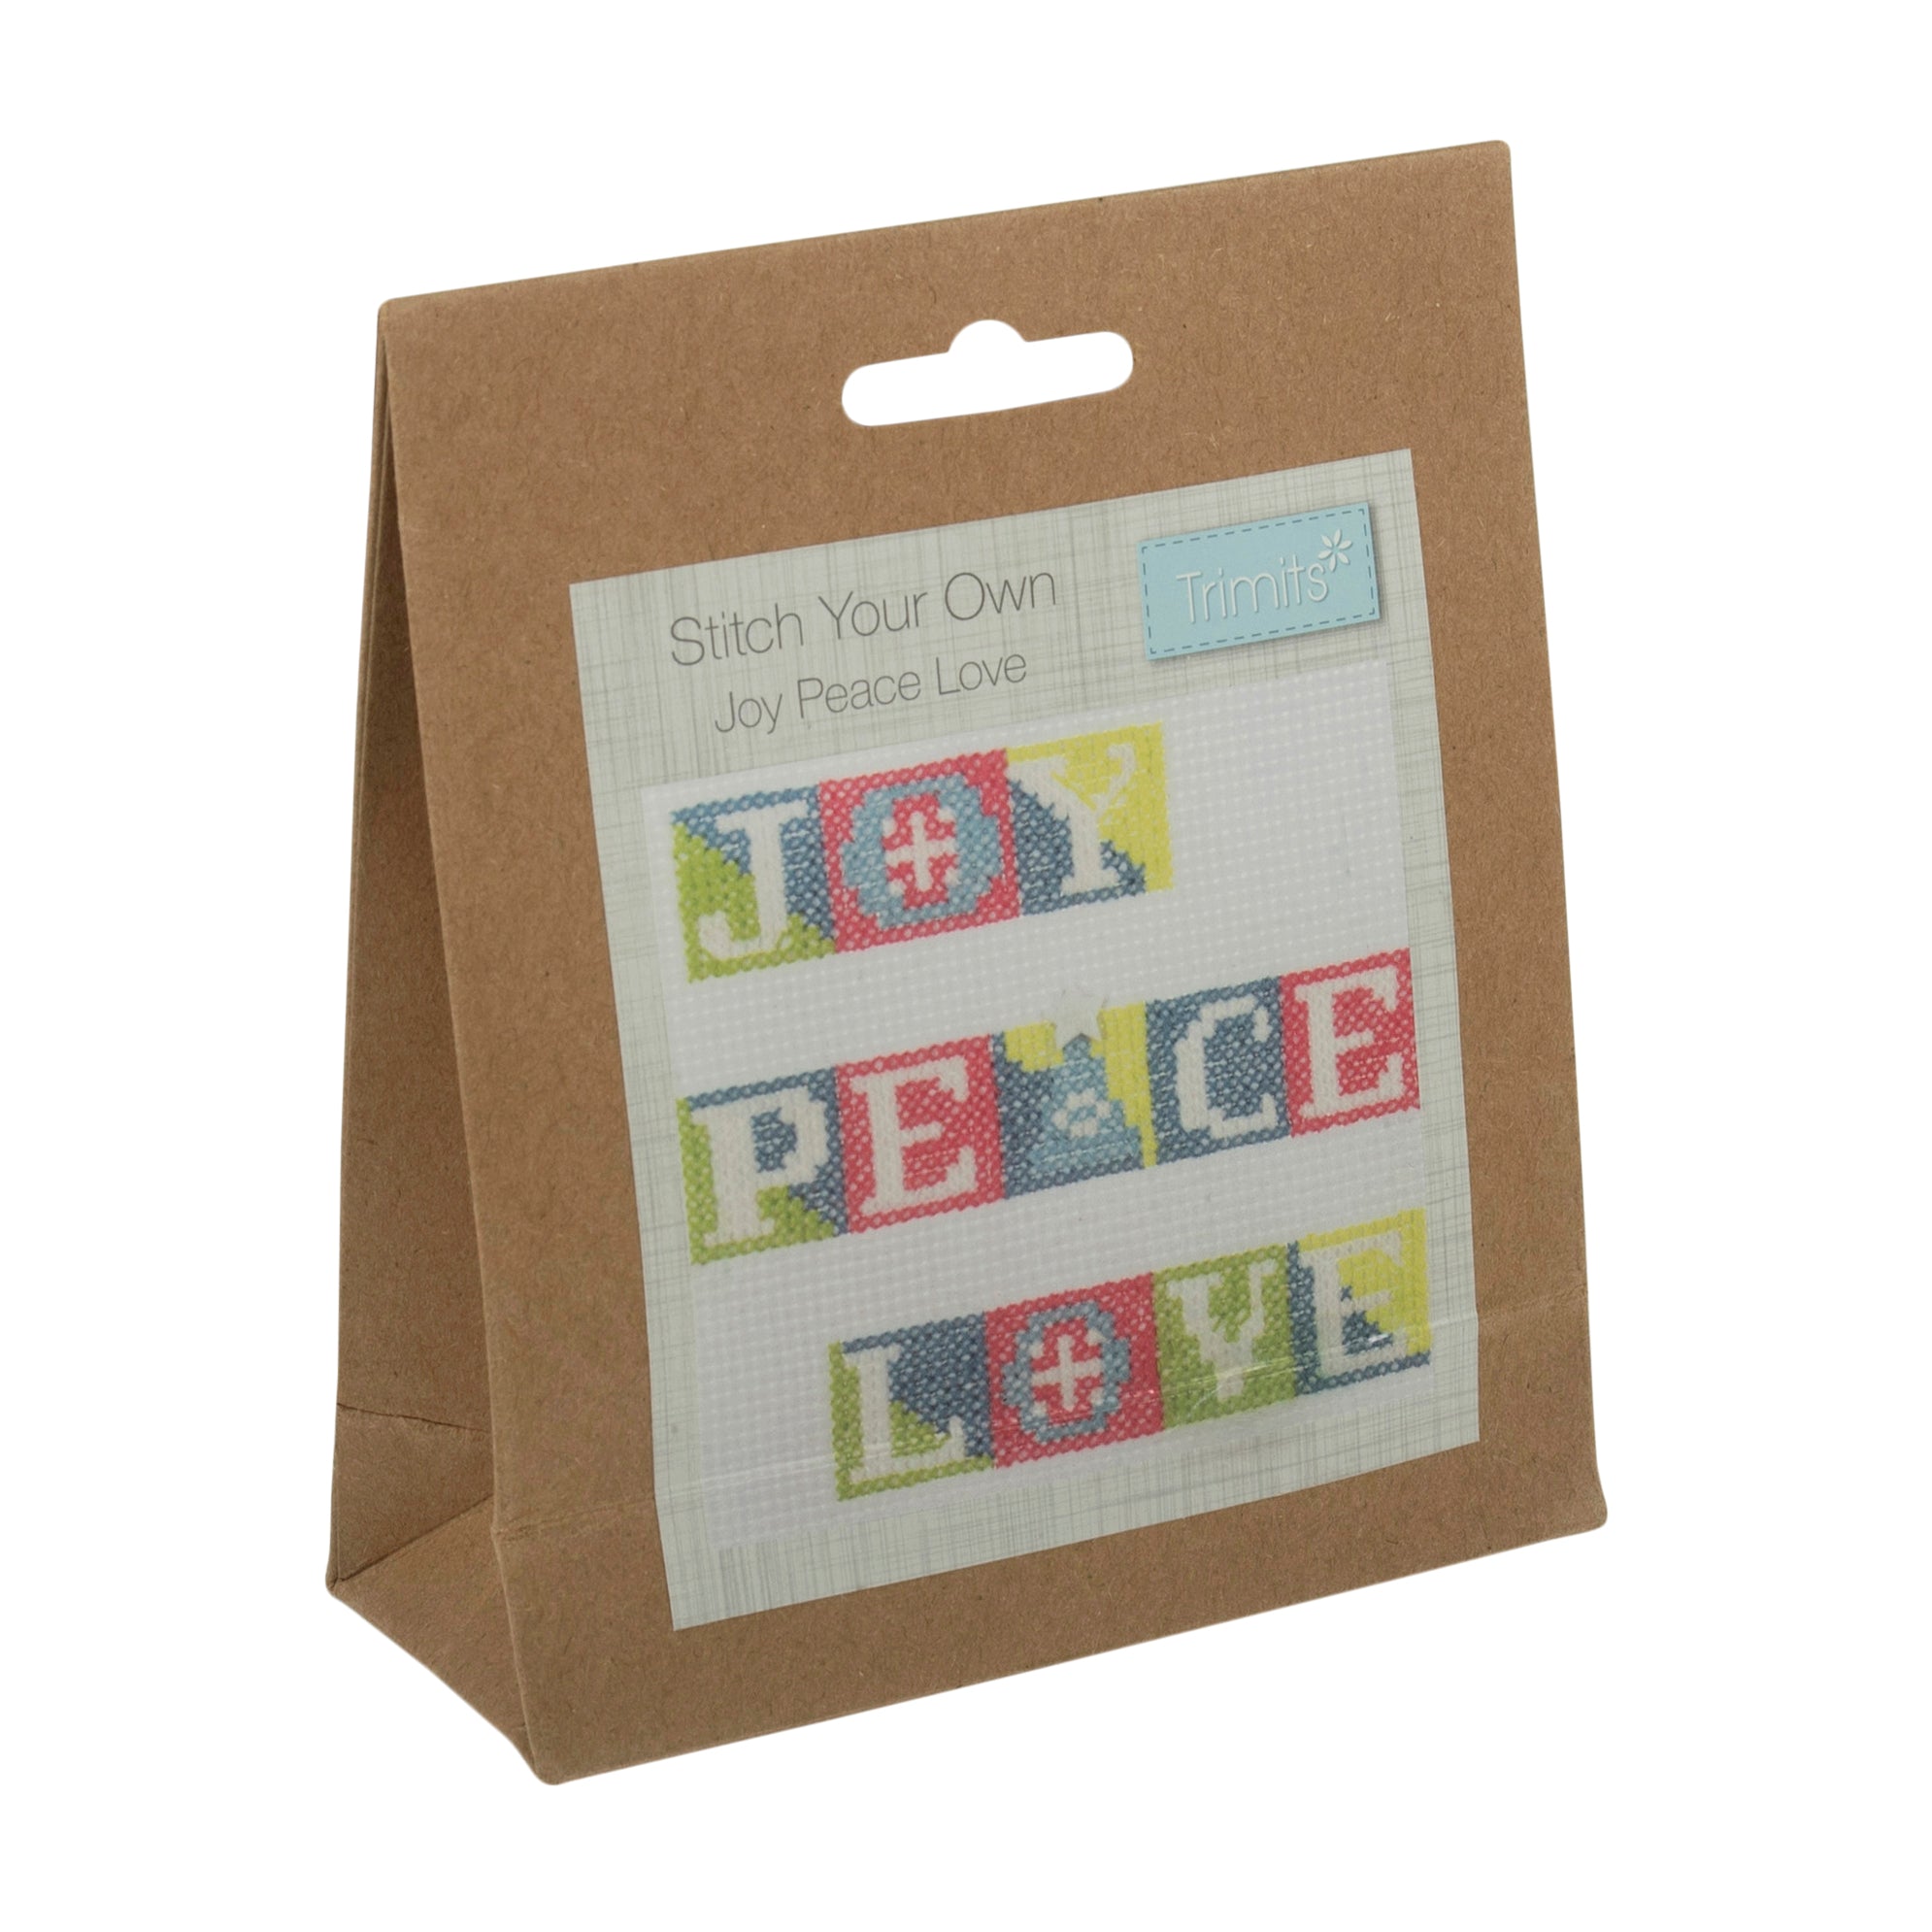 Trimits Festive Cross Stitch Kit: Joy Peace & Love